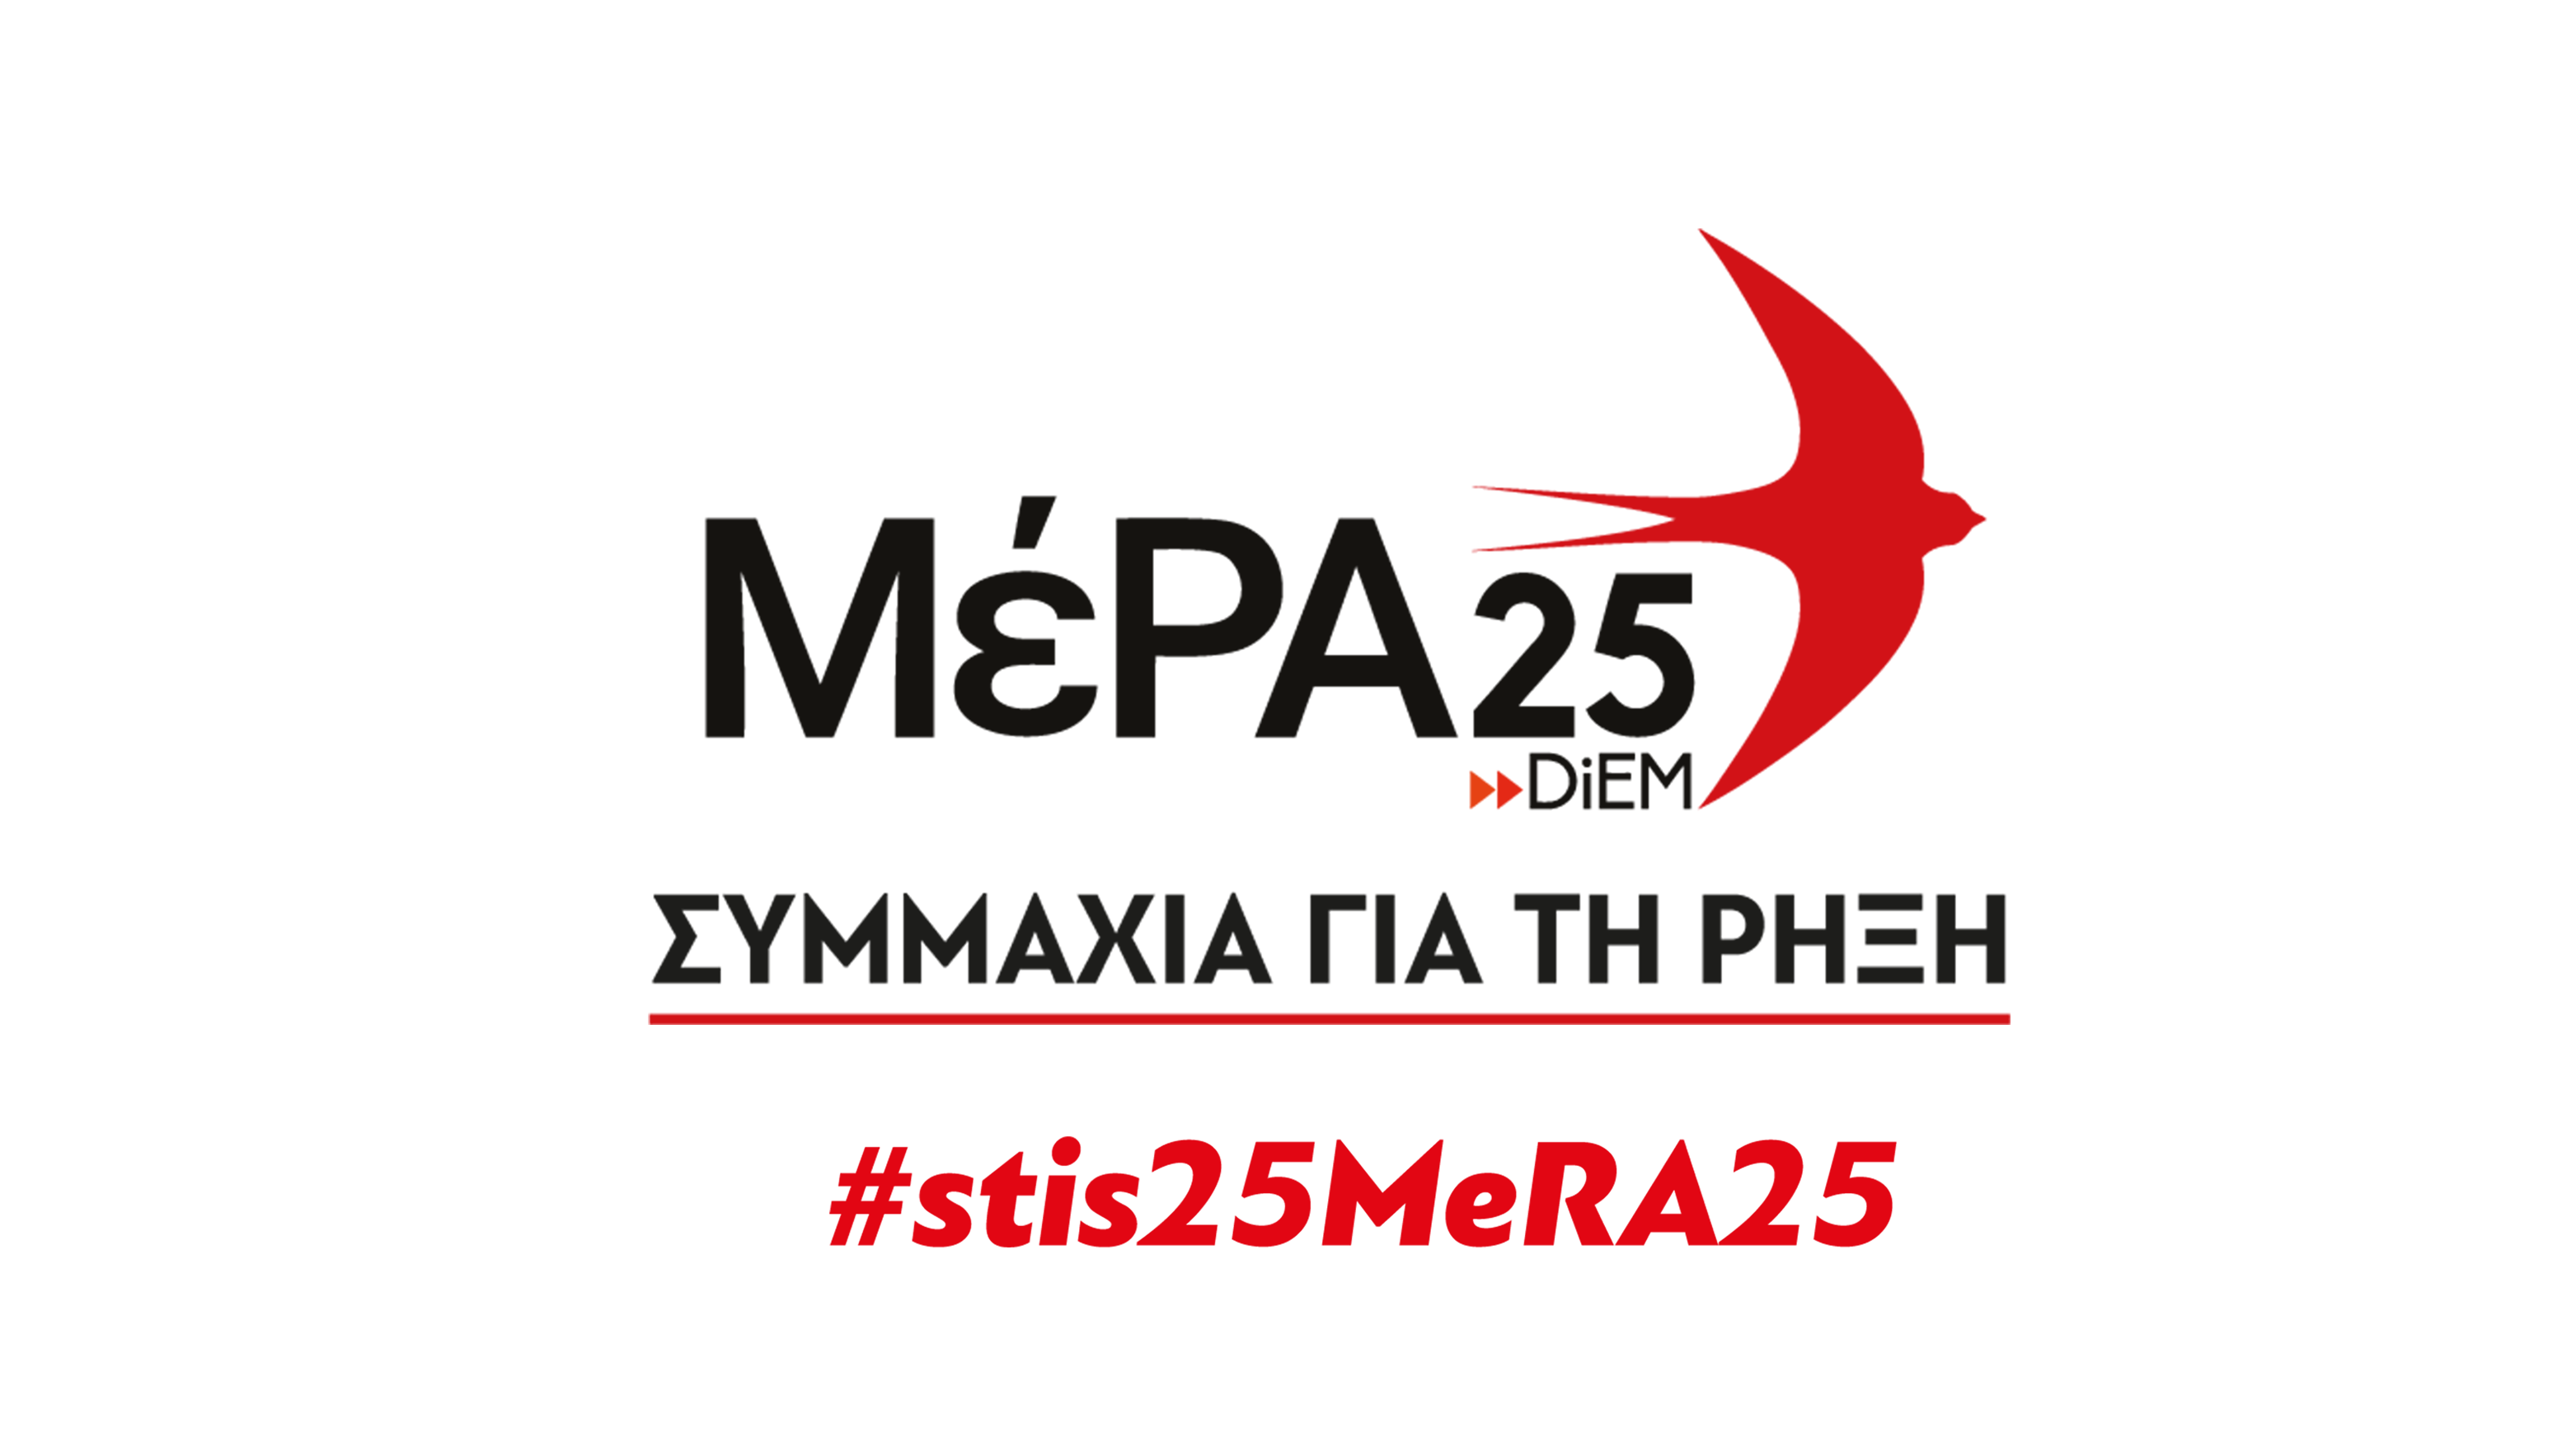 Ανοιχτή προεκλογική εκδήλωση του ΜέΡΑ25 – Συμμαχία για τη Ρήξη στη Μυτιλήνη